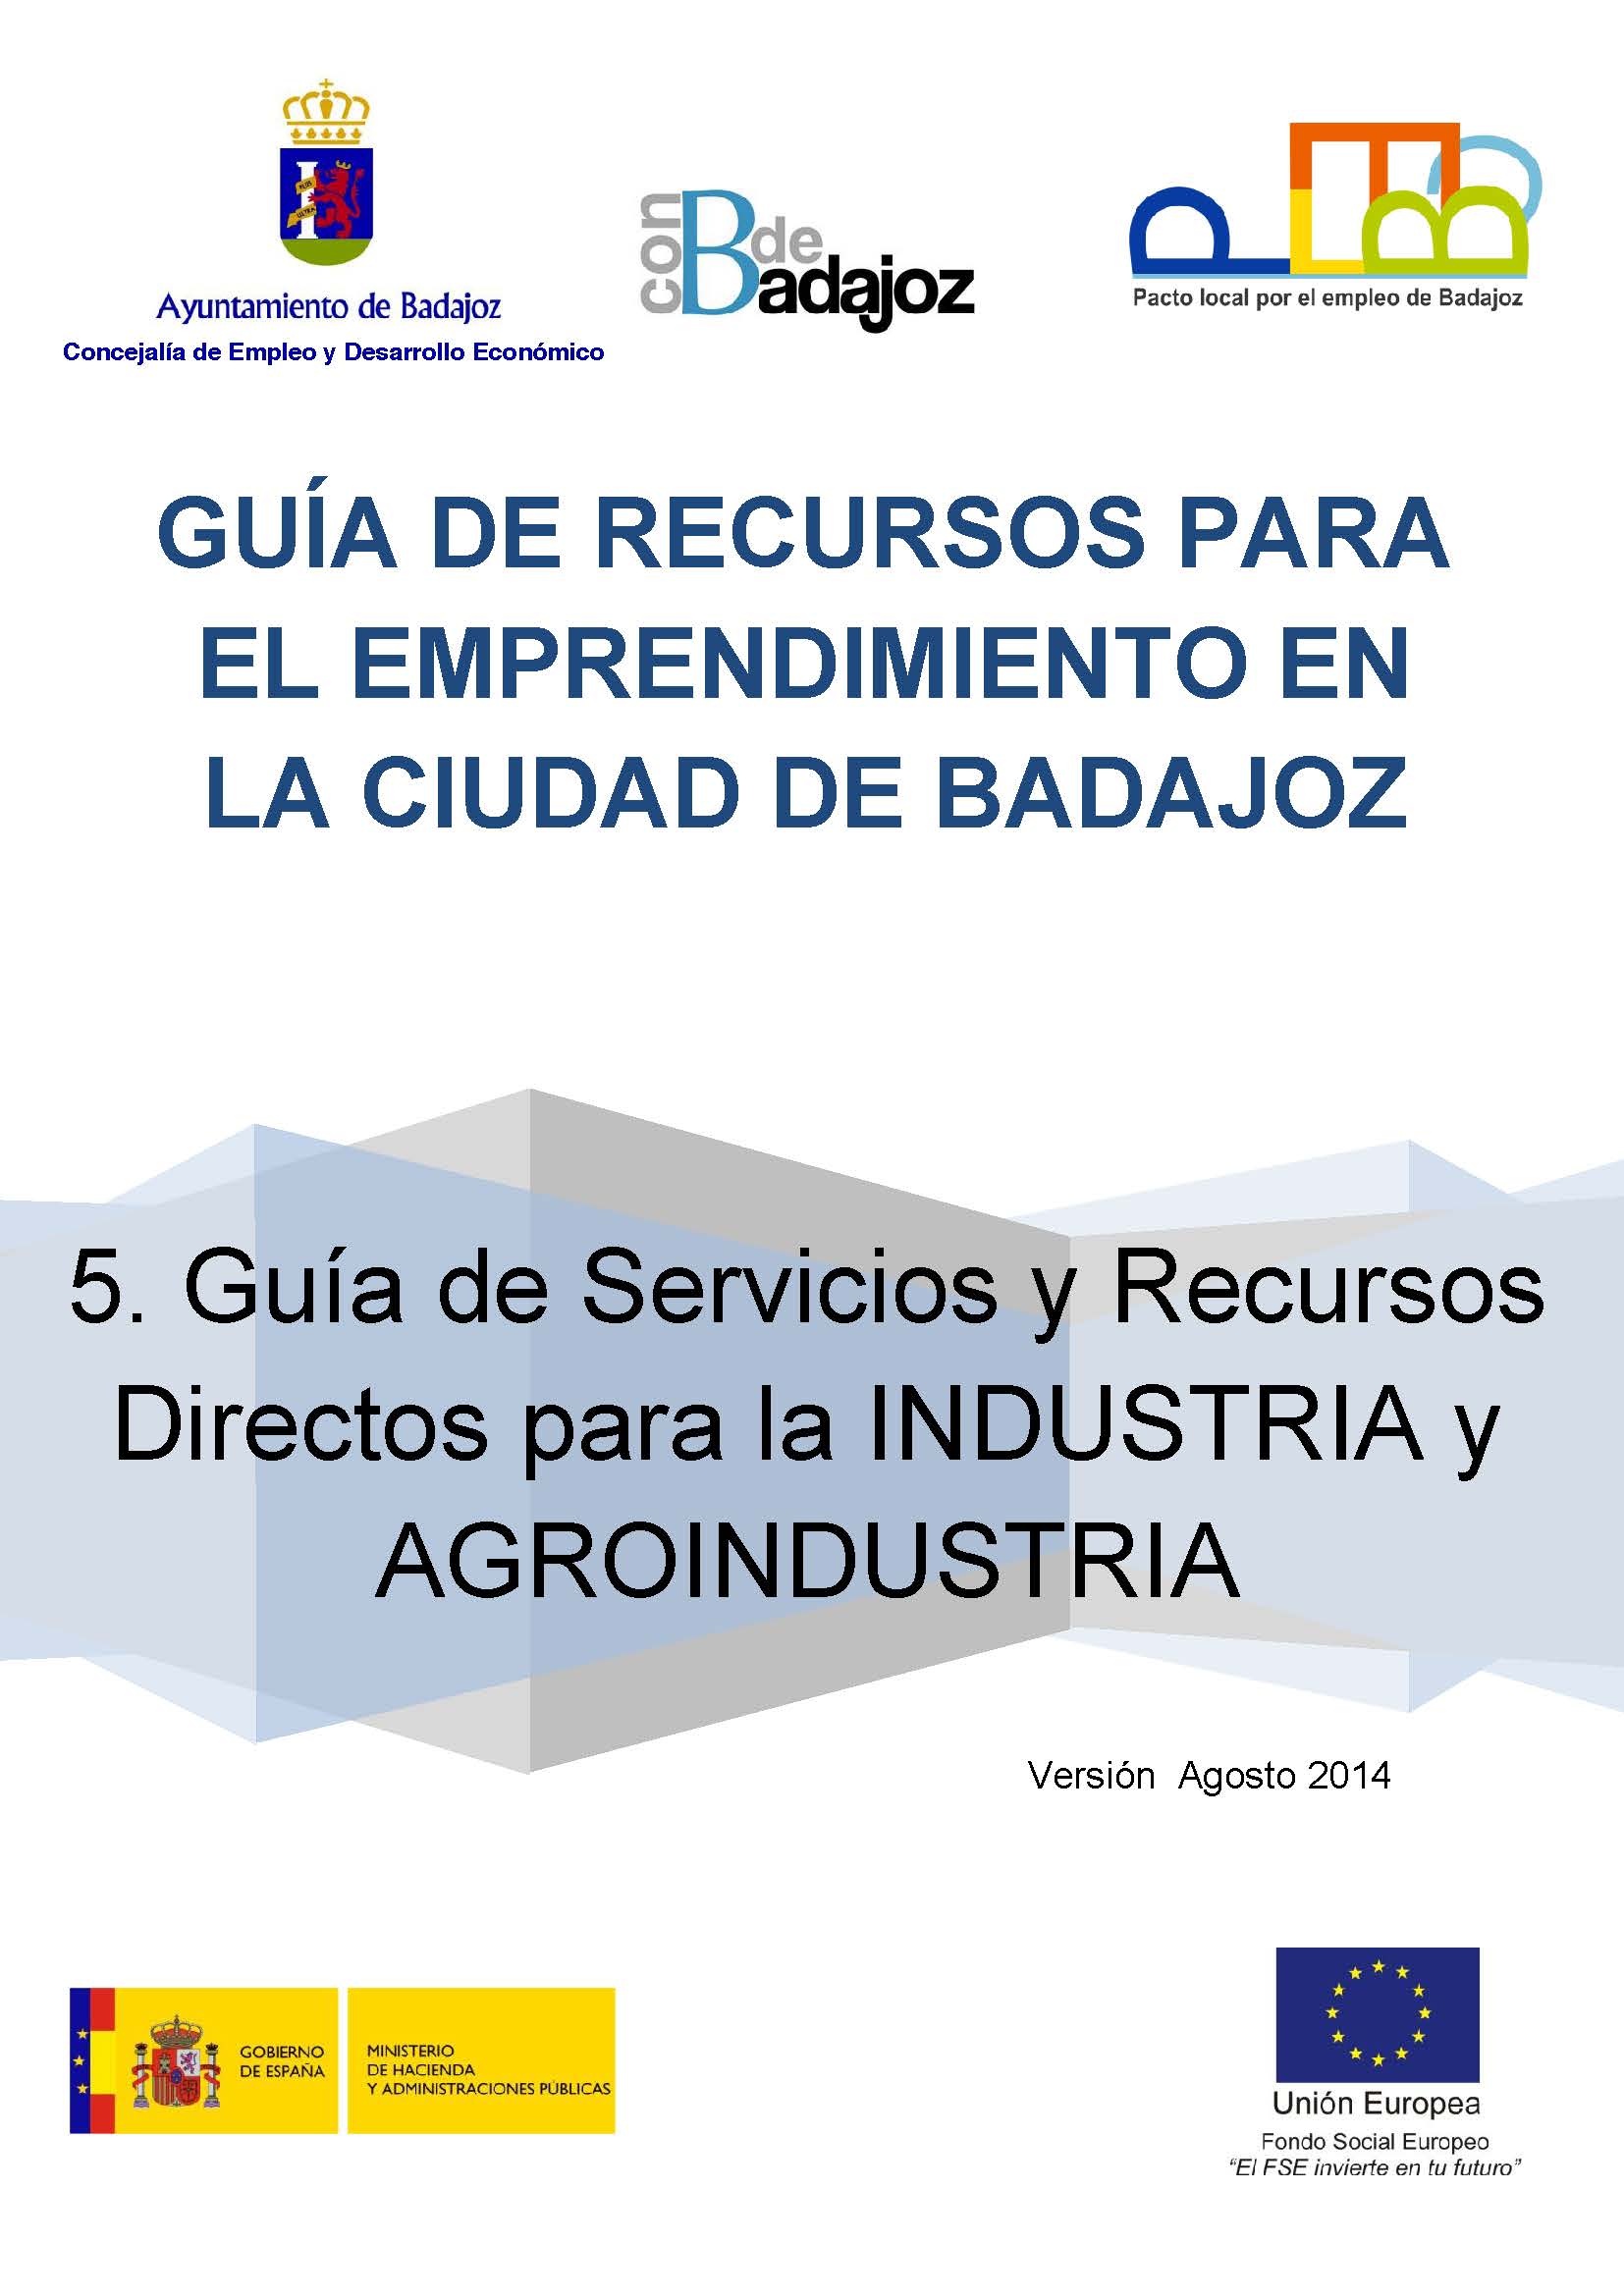 Gua de Recursos y Servicios directos para la Industria y Agroindustria en la ciudad de Badajoz